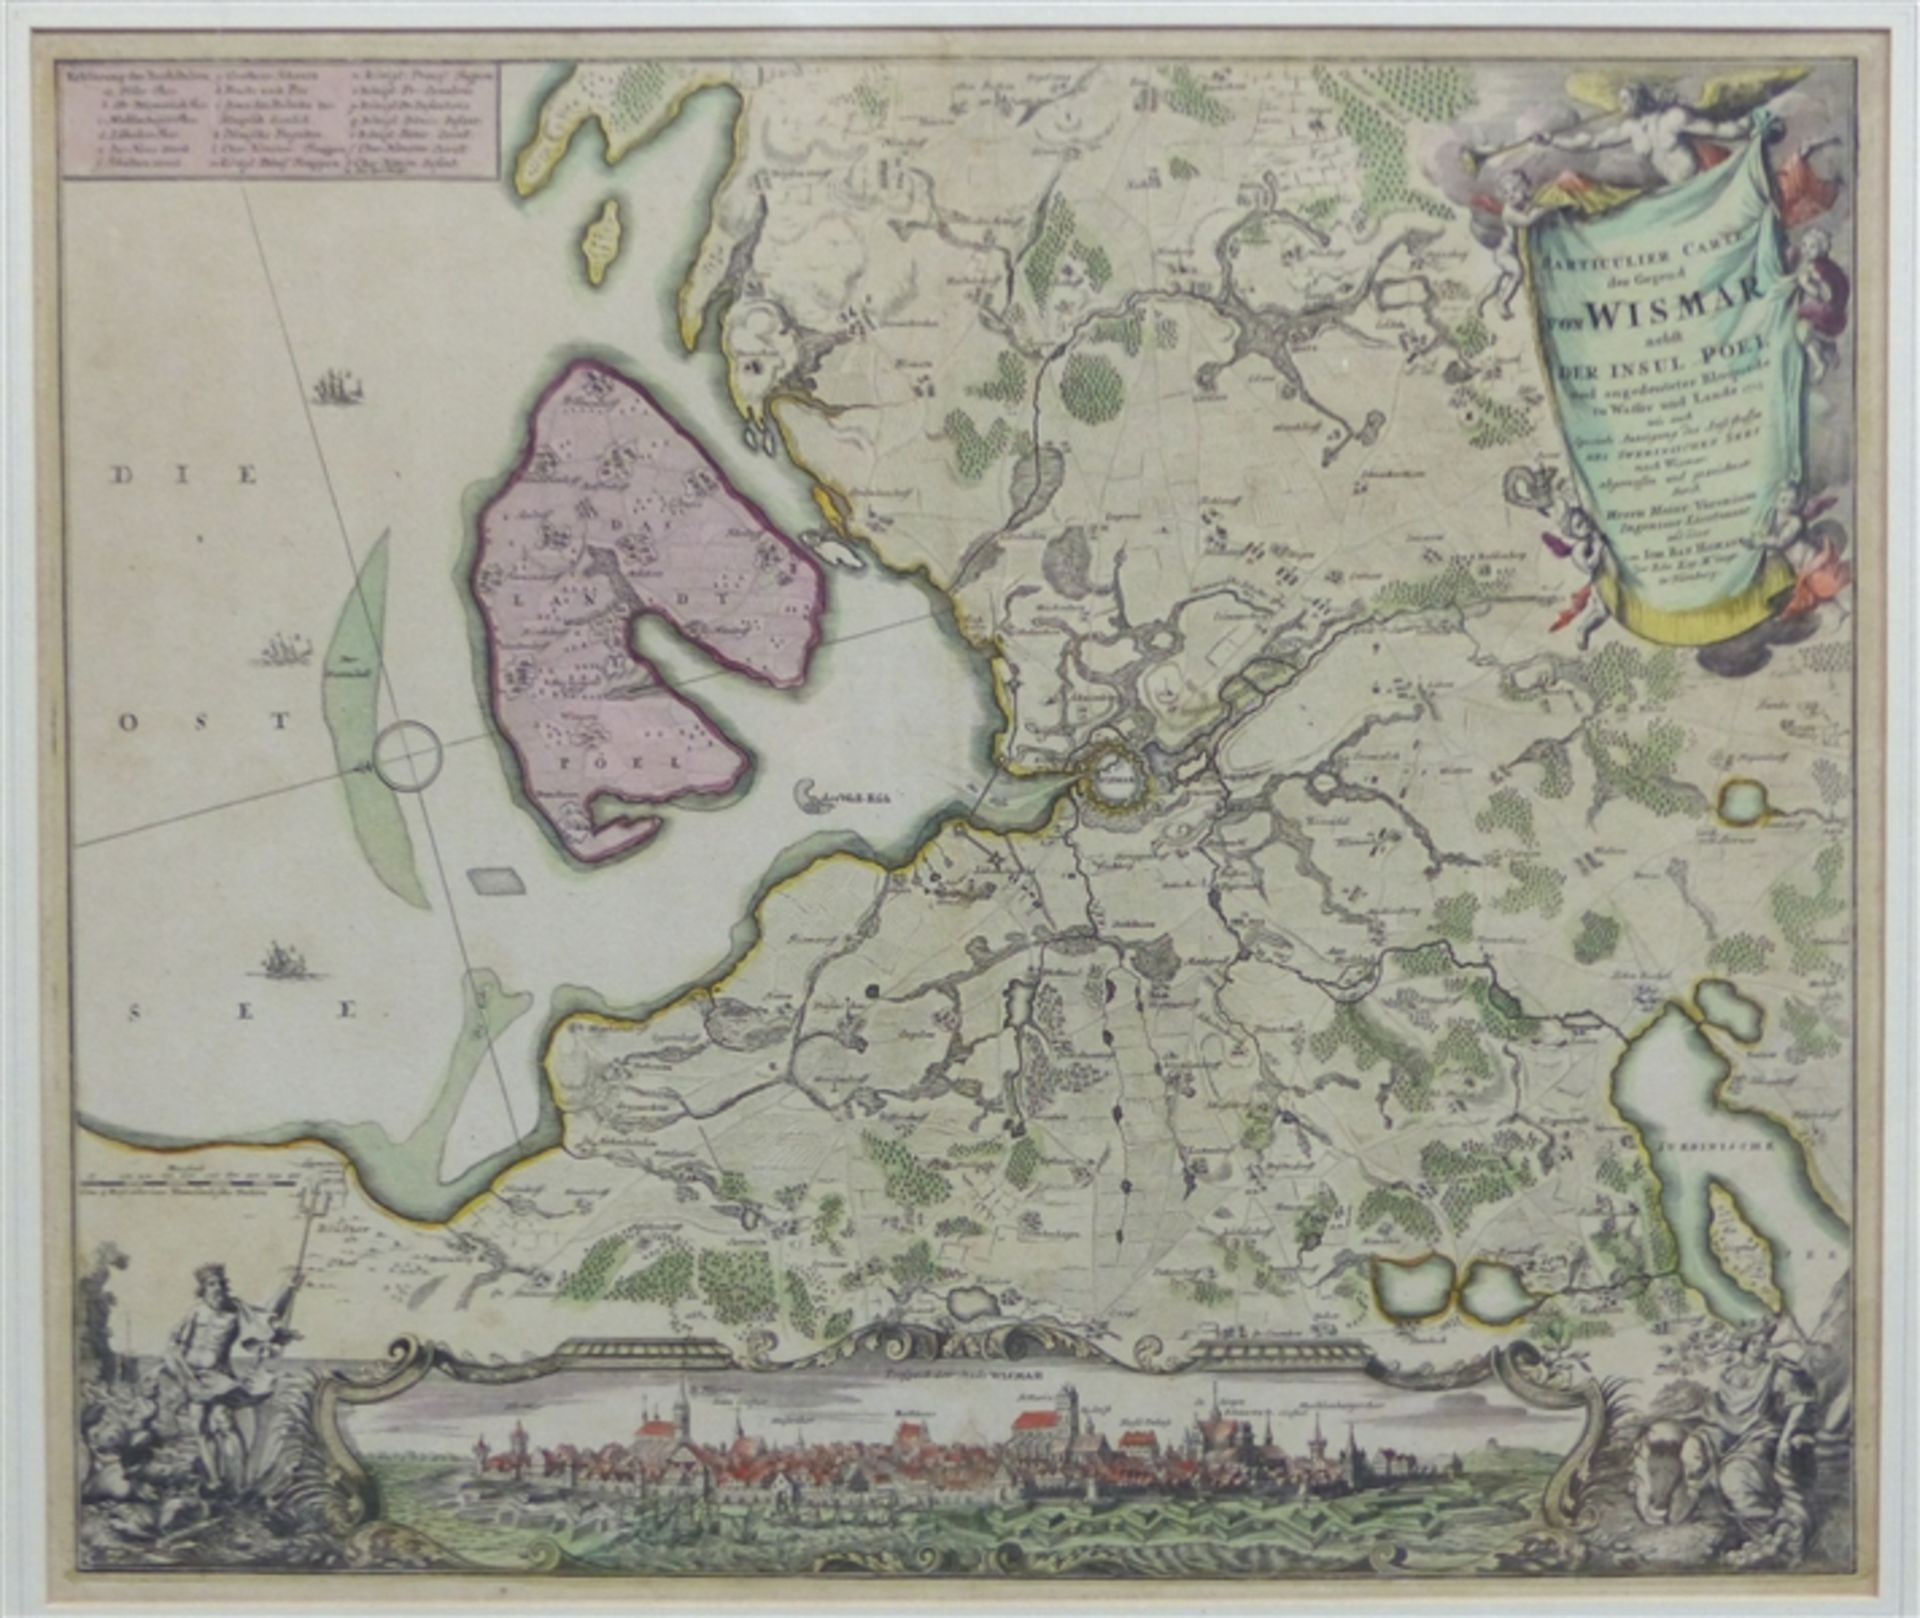 Kupferstichkarte coloriert, Homann Nürnberg, Wismar und Umgebung mit Stadtansicht, um 1720, 49x57